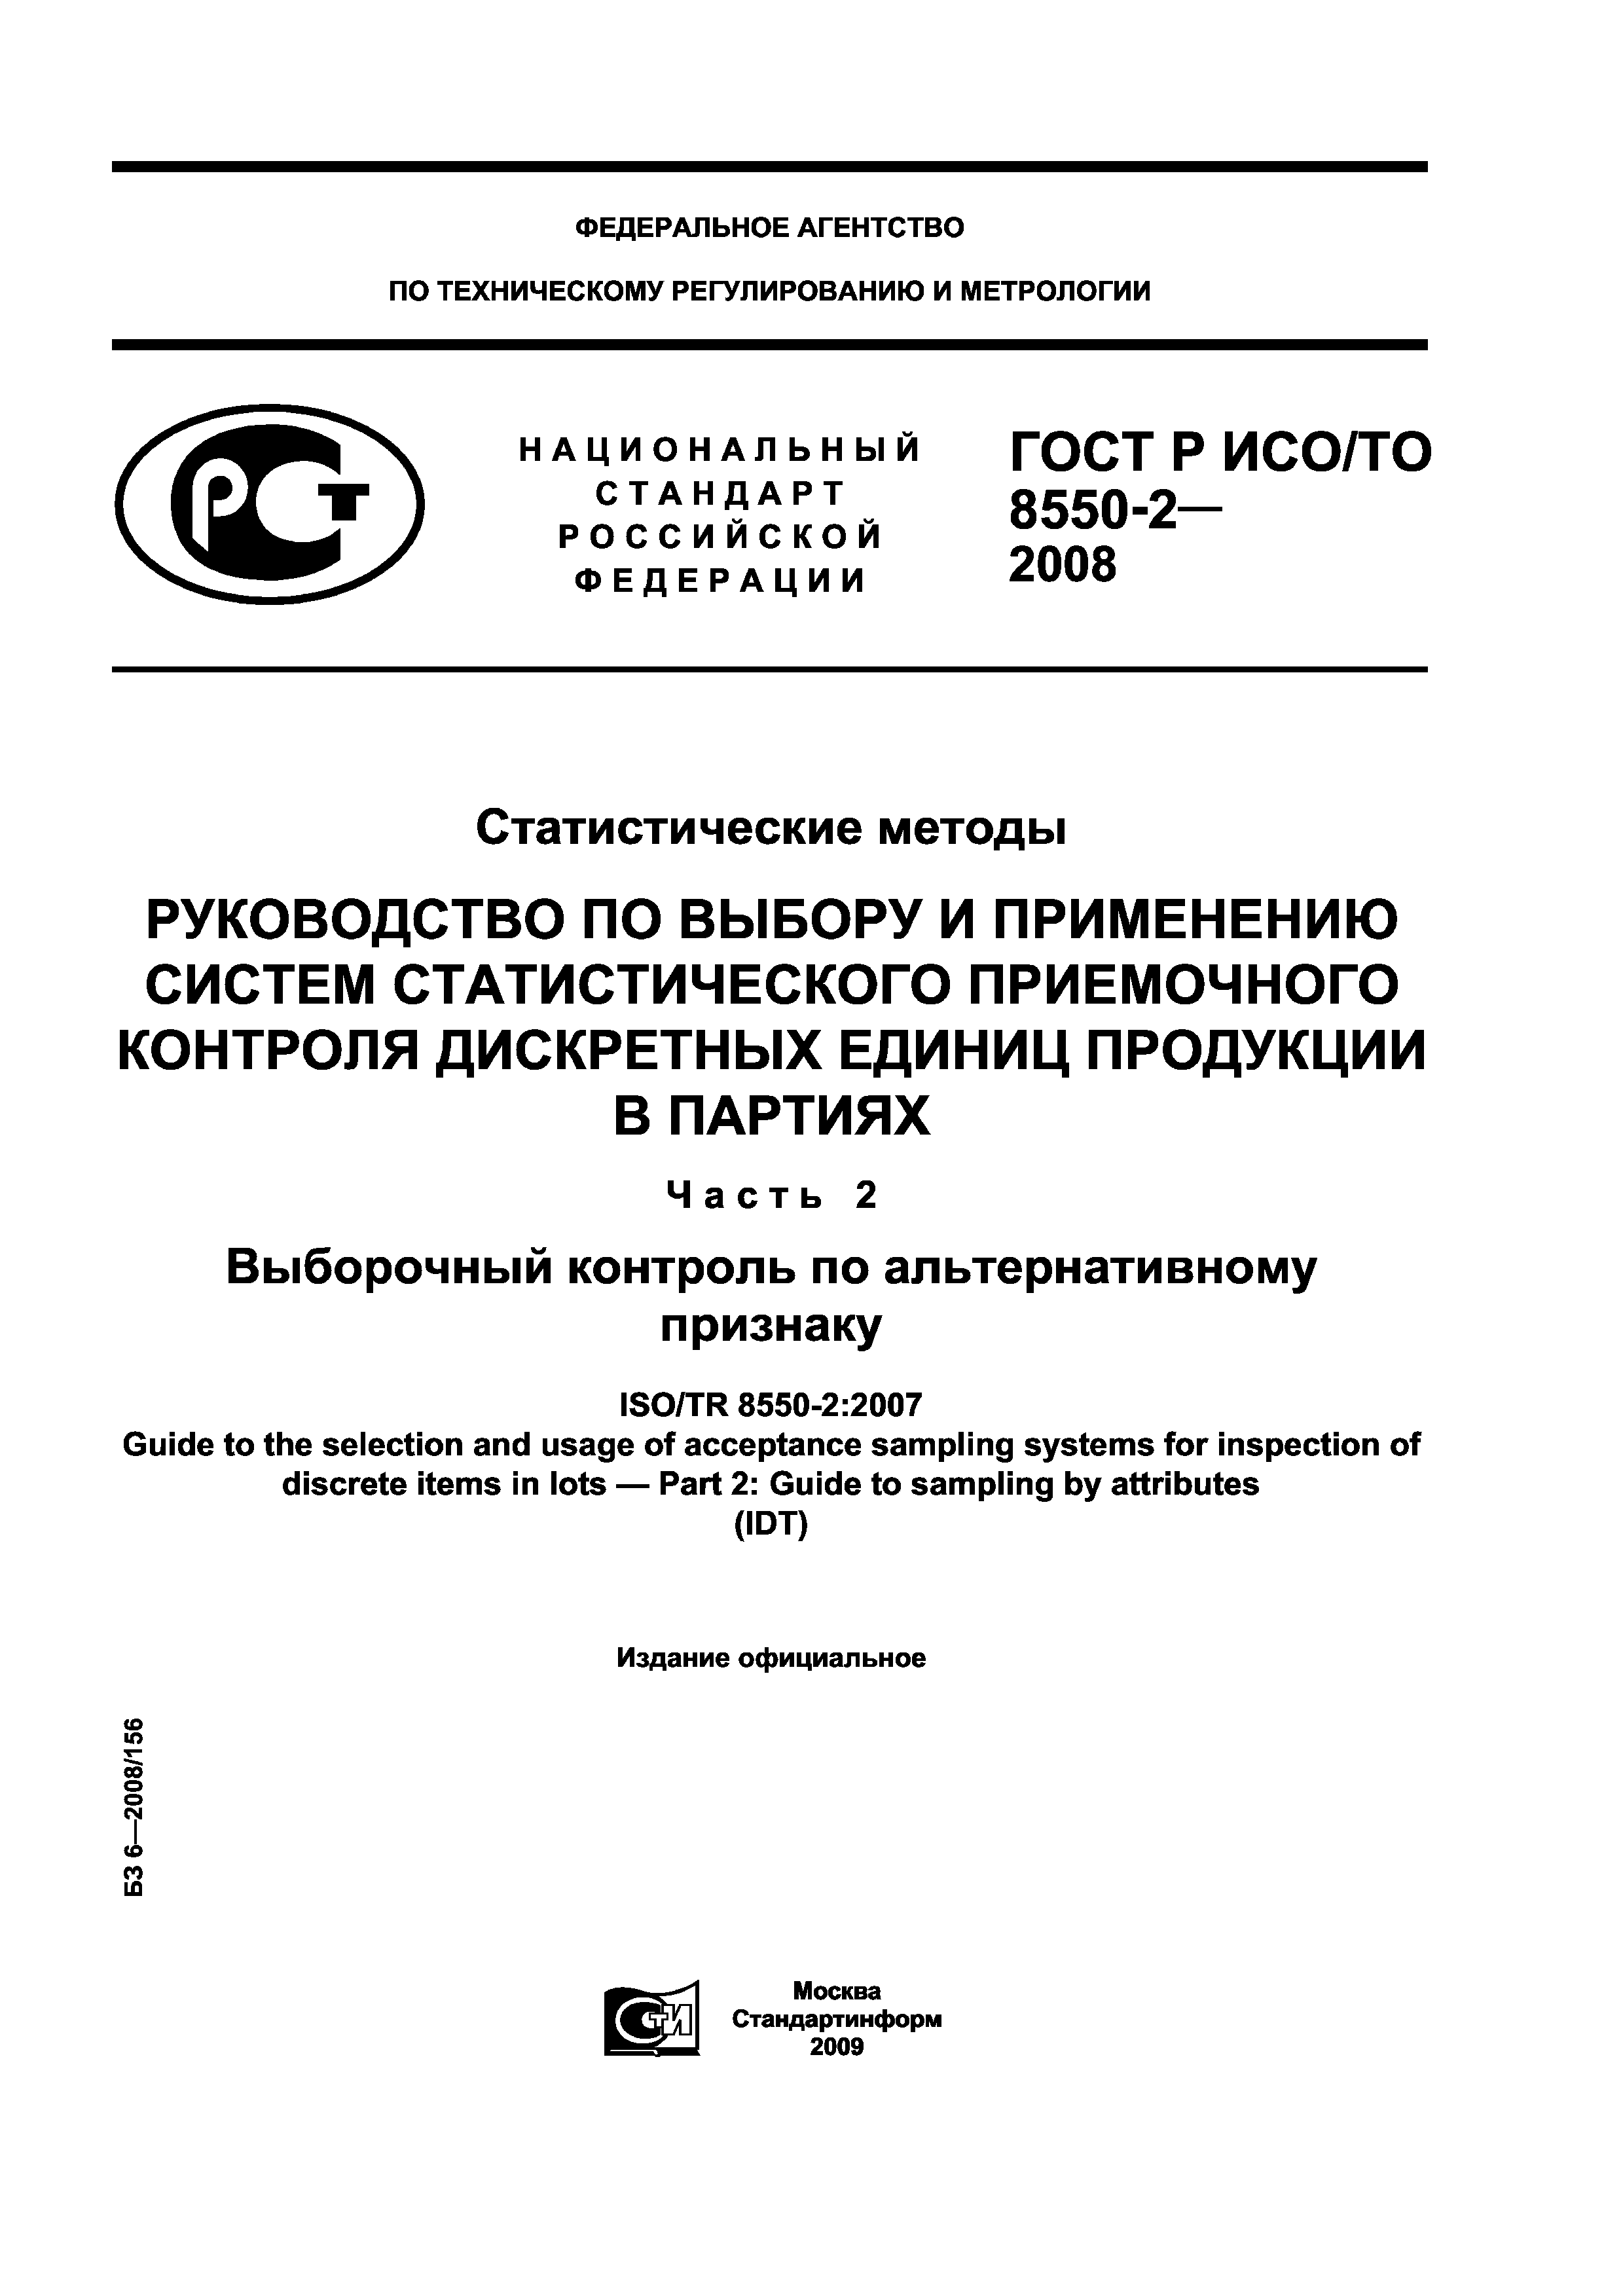 ГОСТ Р ИСО/ТО 8550-2-2008